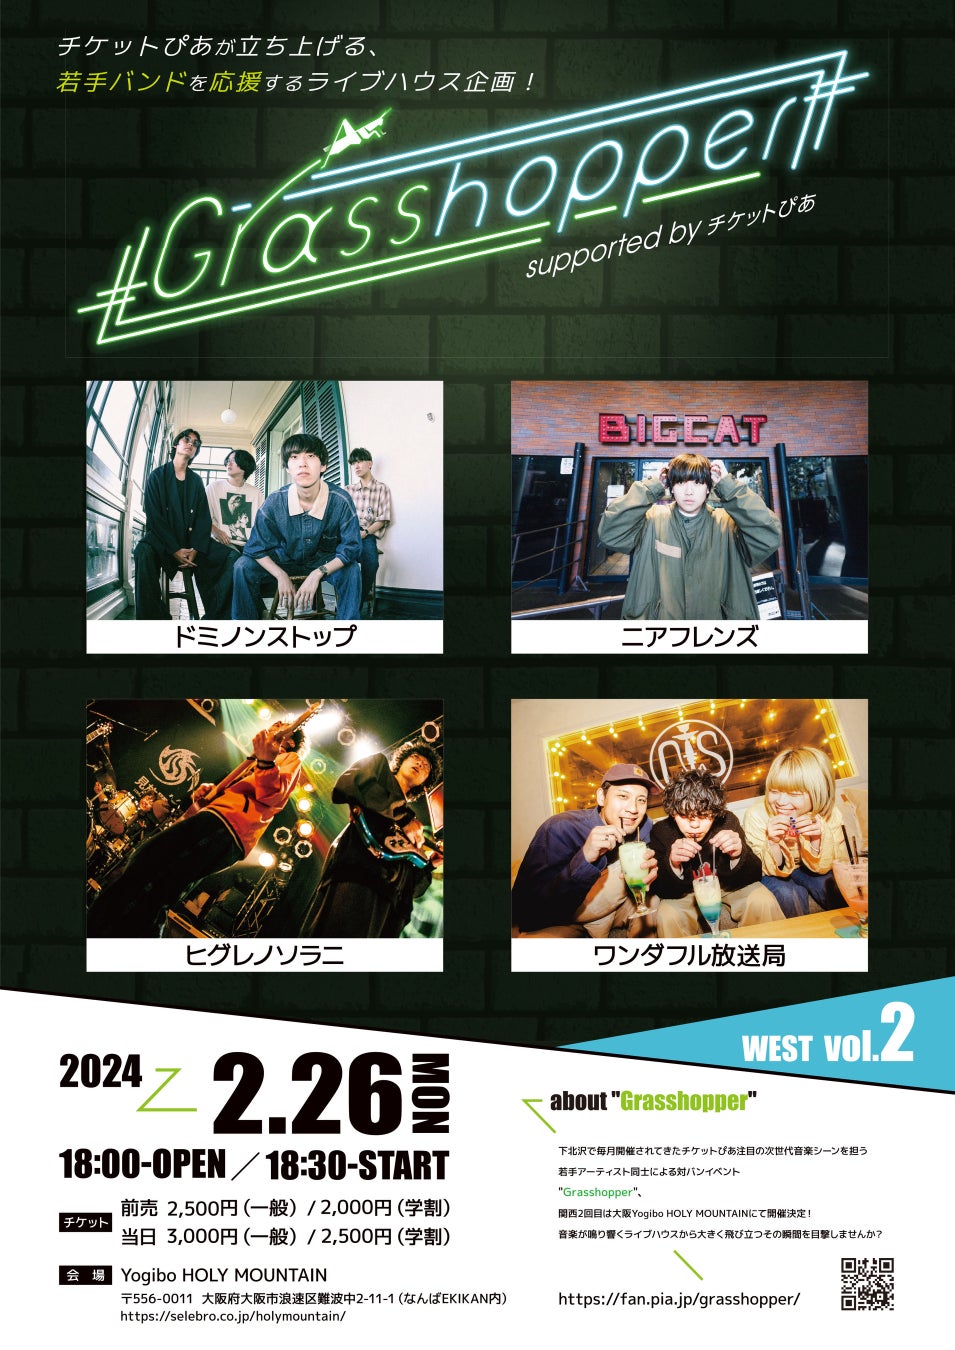 チケットぴあ主催の若手バンドイベント、関西2回目は2月26日(月)に大阪にて「Grasshopper WEST vol.2 supported by チケットぴあ」開催決定！